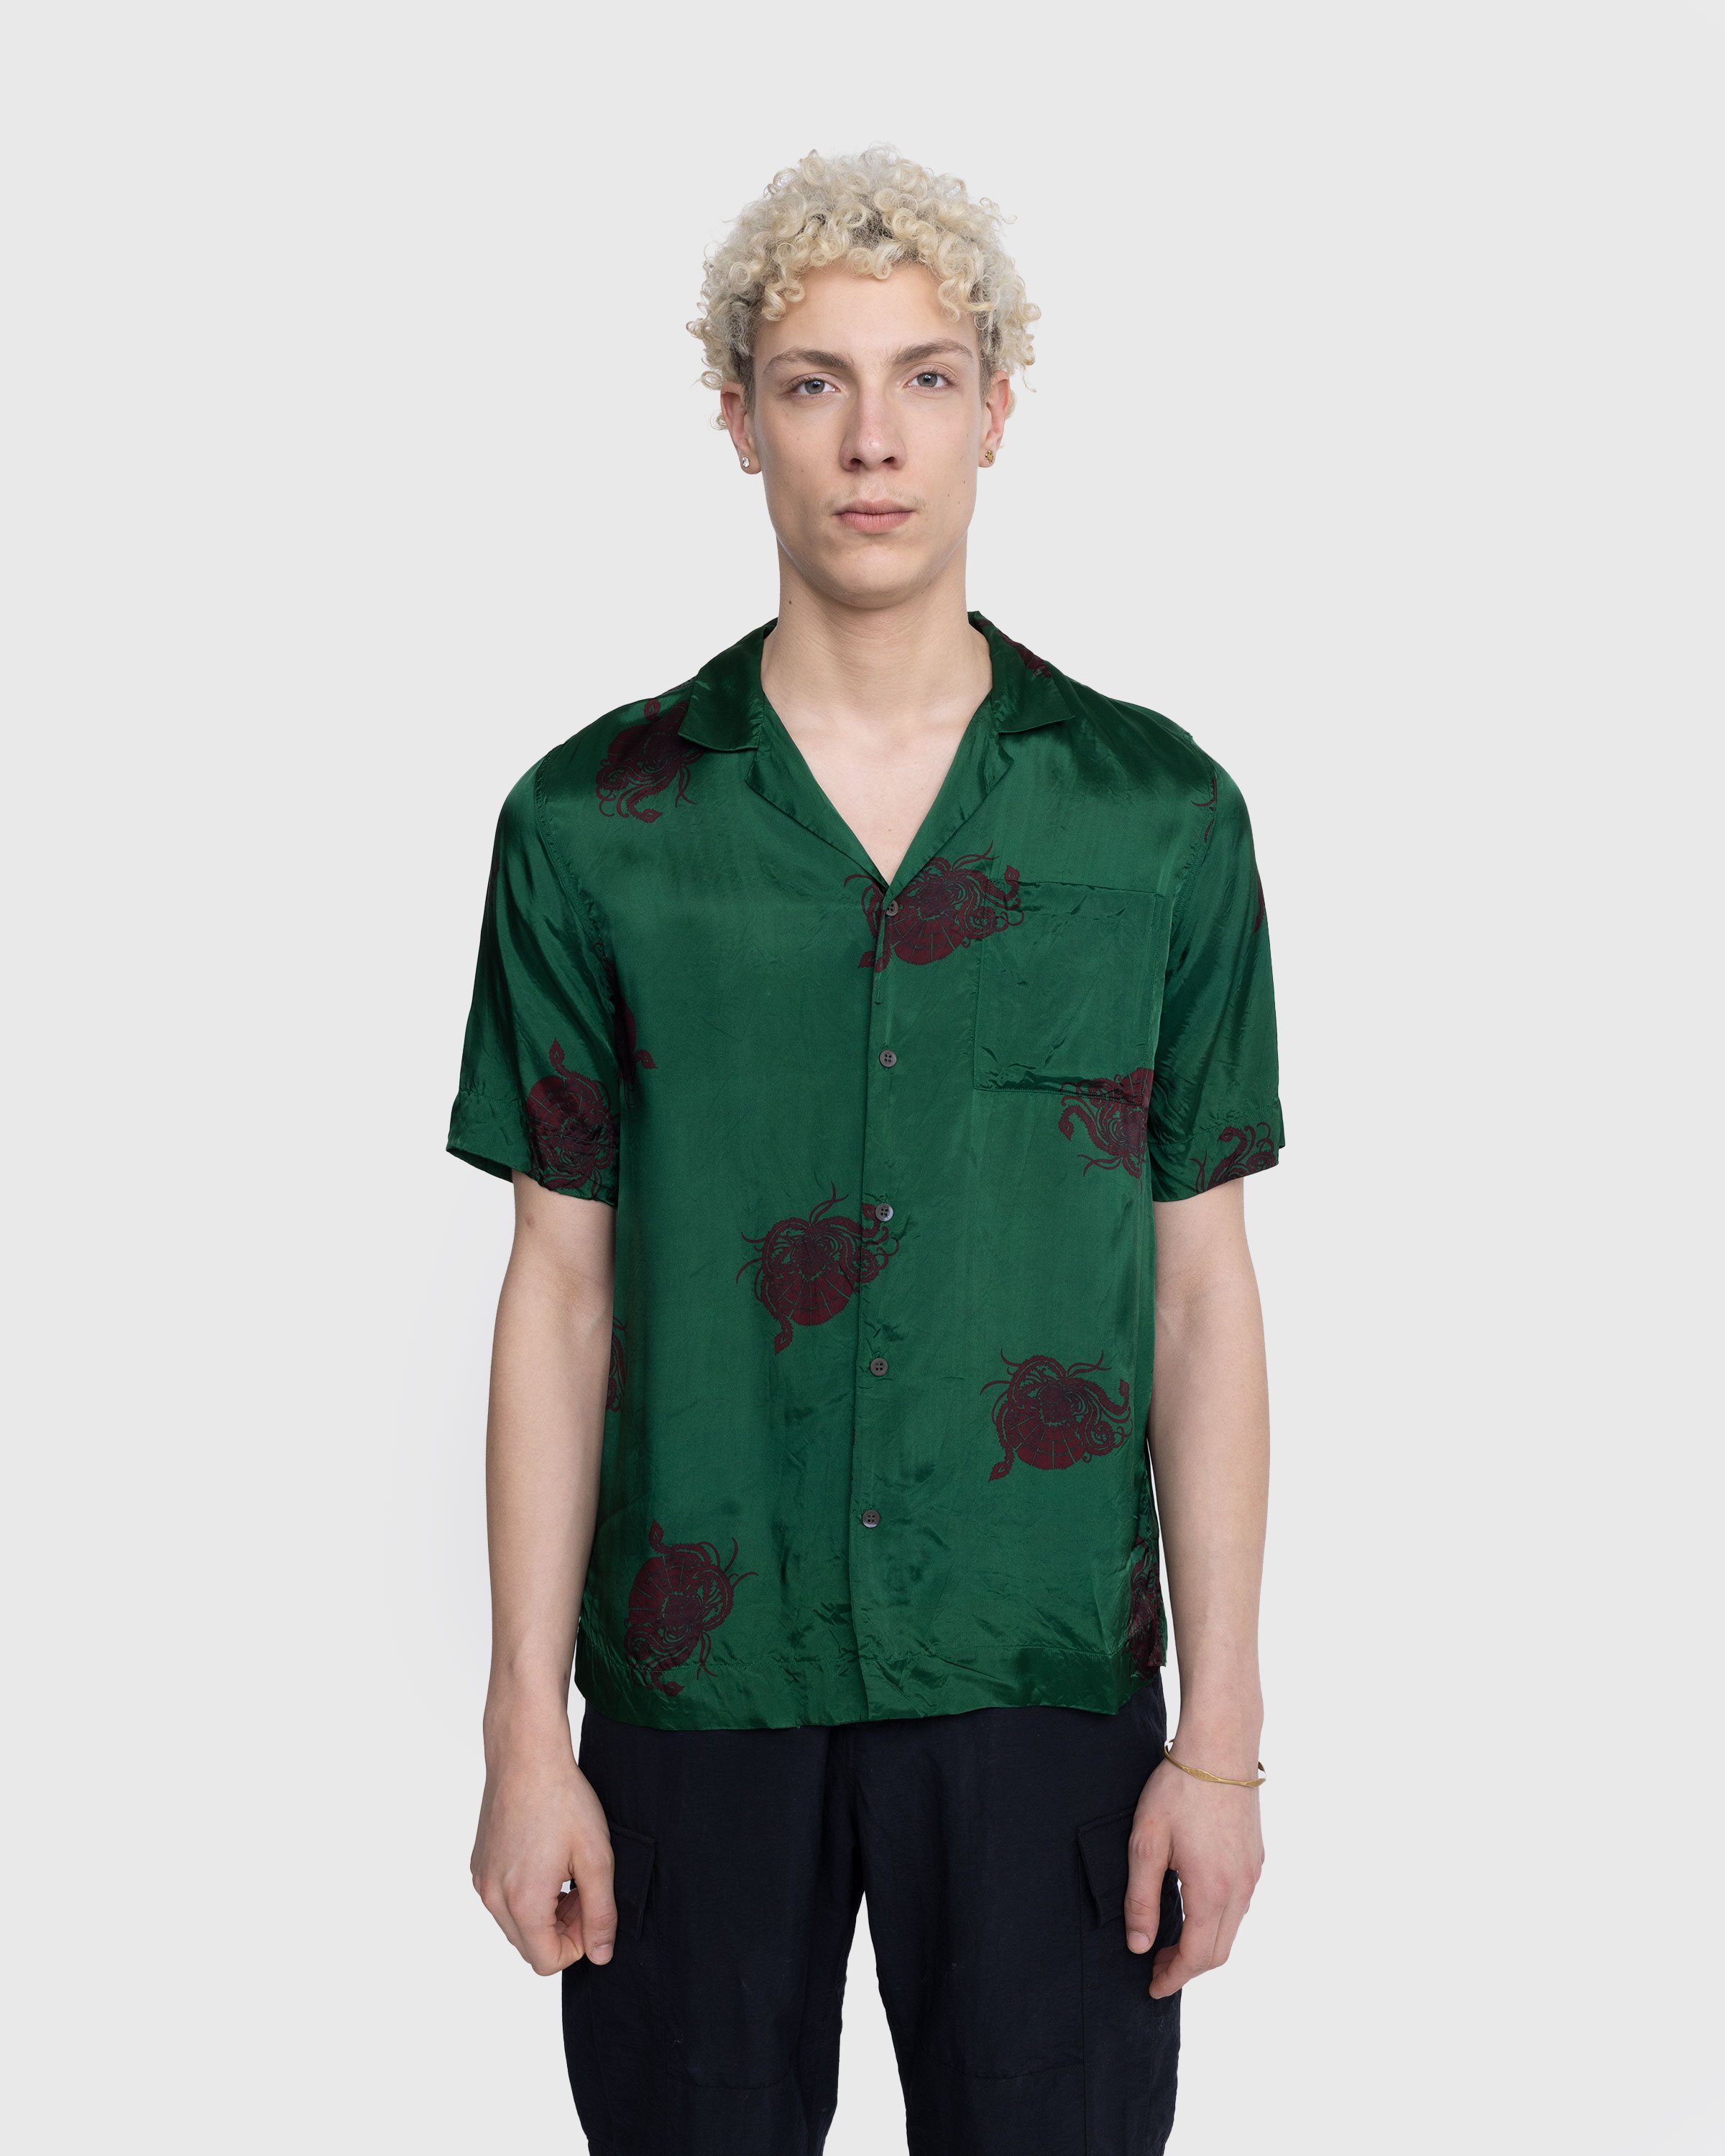 Dries van Noten - Carltone Shirt Bottle - Clothing - Green - Image 2